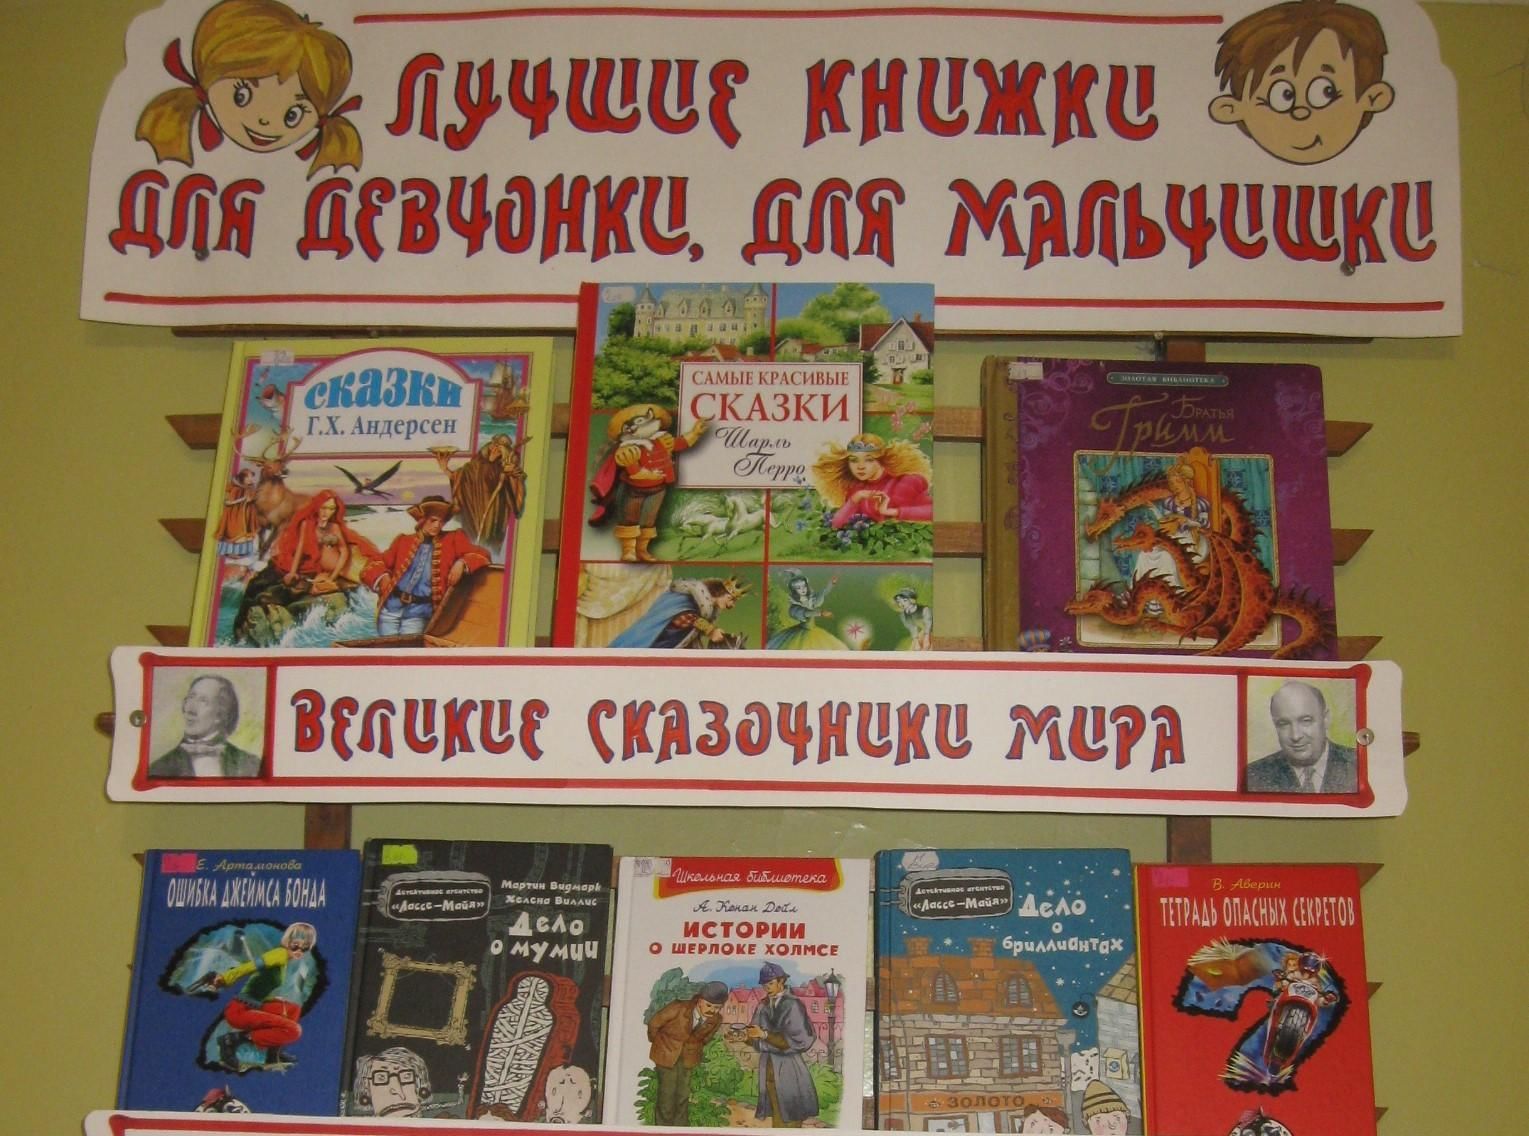 Название выставки к неделе детской книги